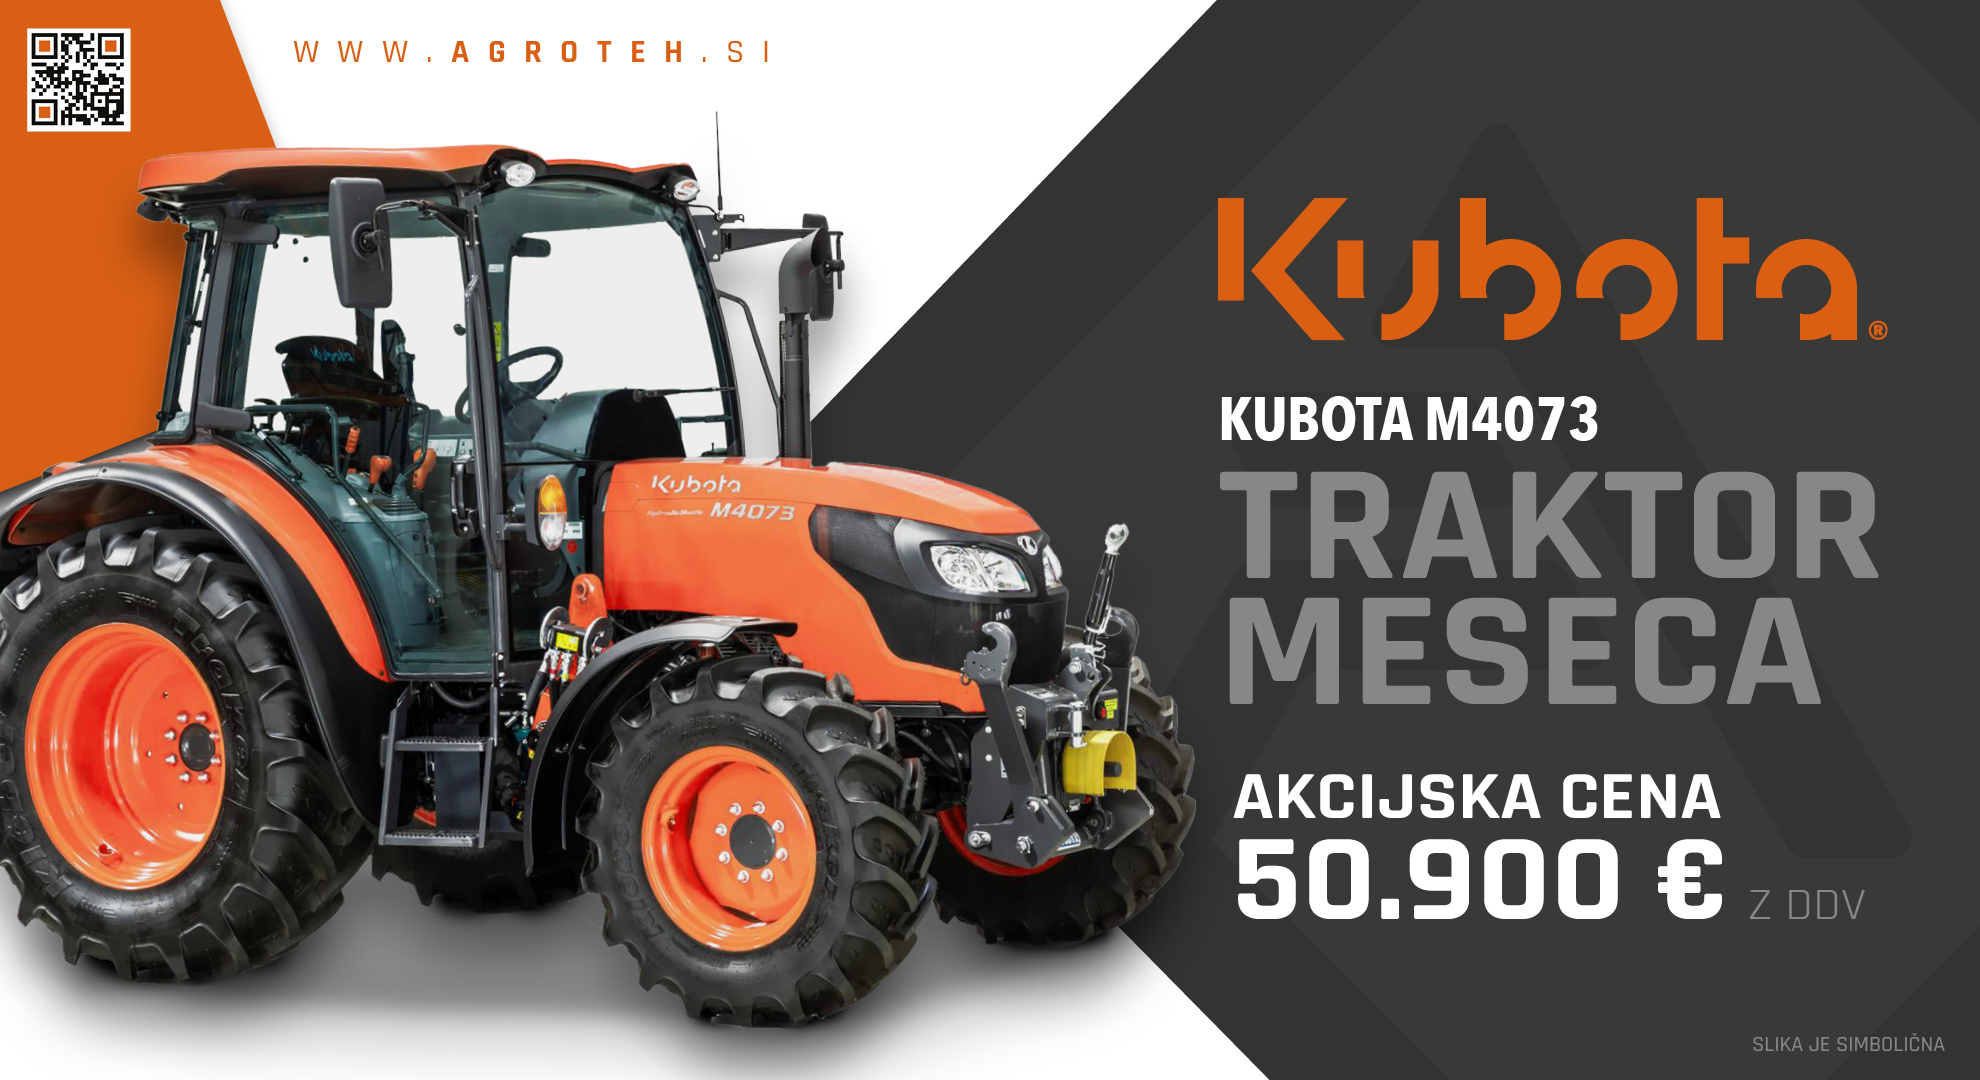 Traktor meseca: Kubota M4073. 50.900€ z DDV